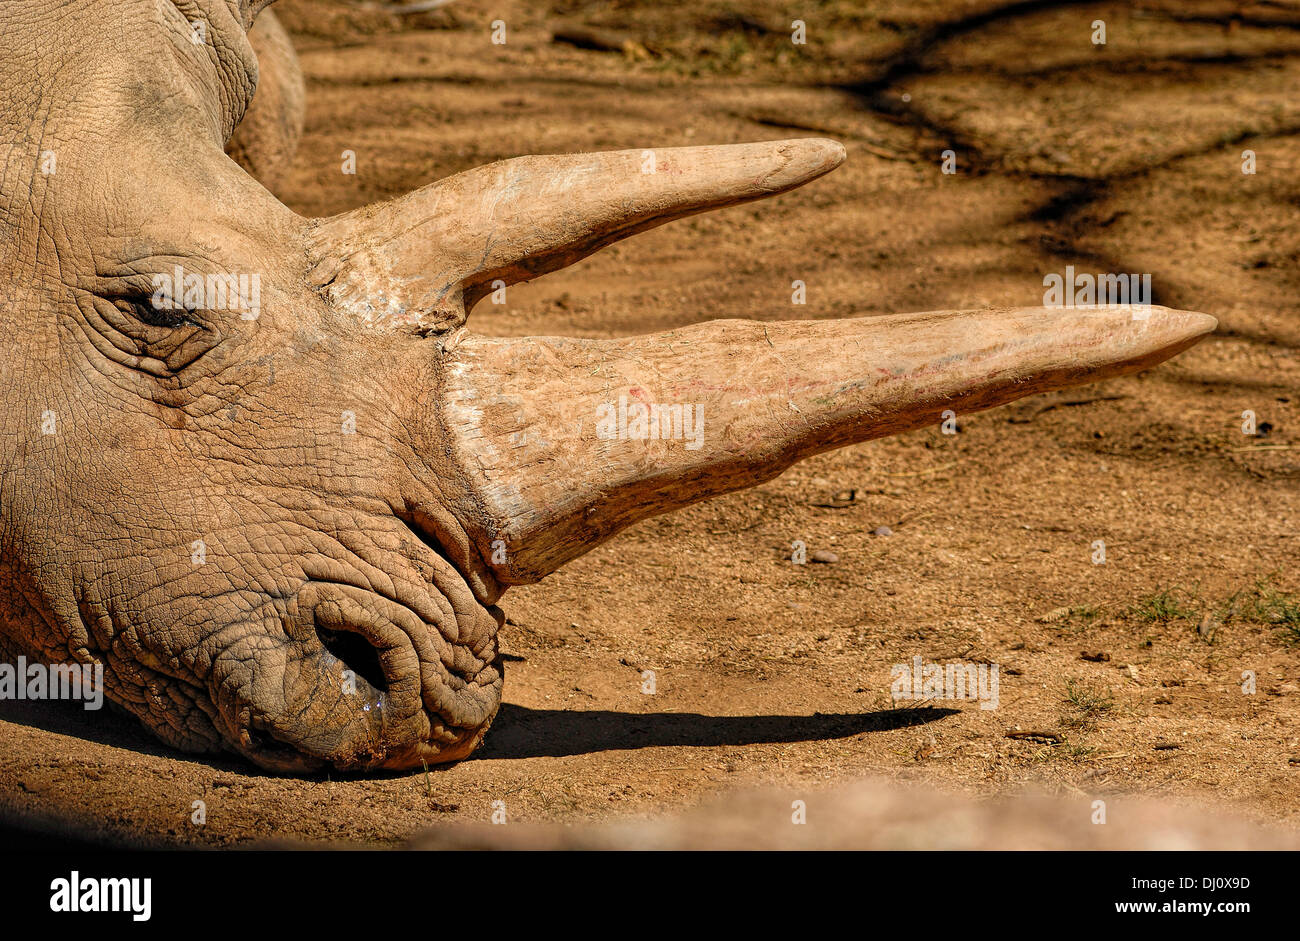 Le rhinocéros blanc (Ceratotherium simum) vivent sur les plaines herbeuses de l'Afrique Banque D'Images